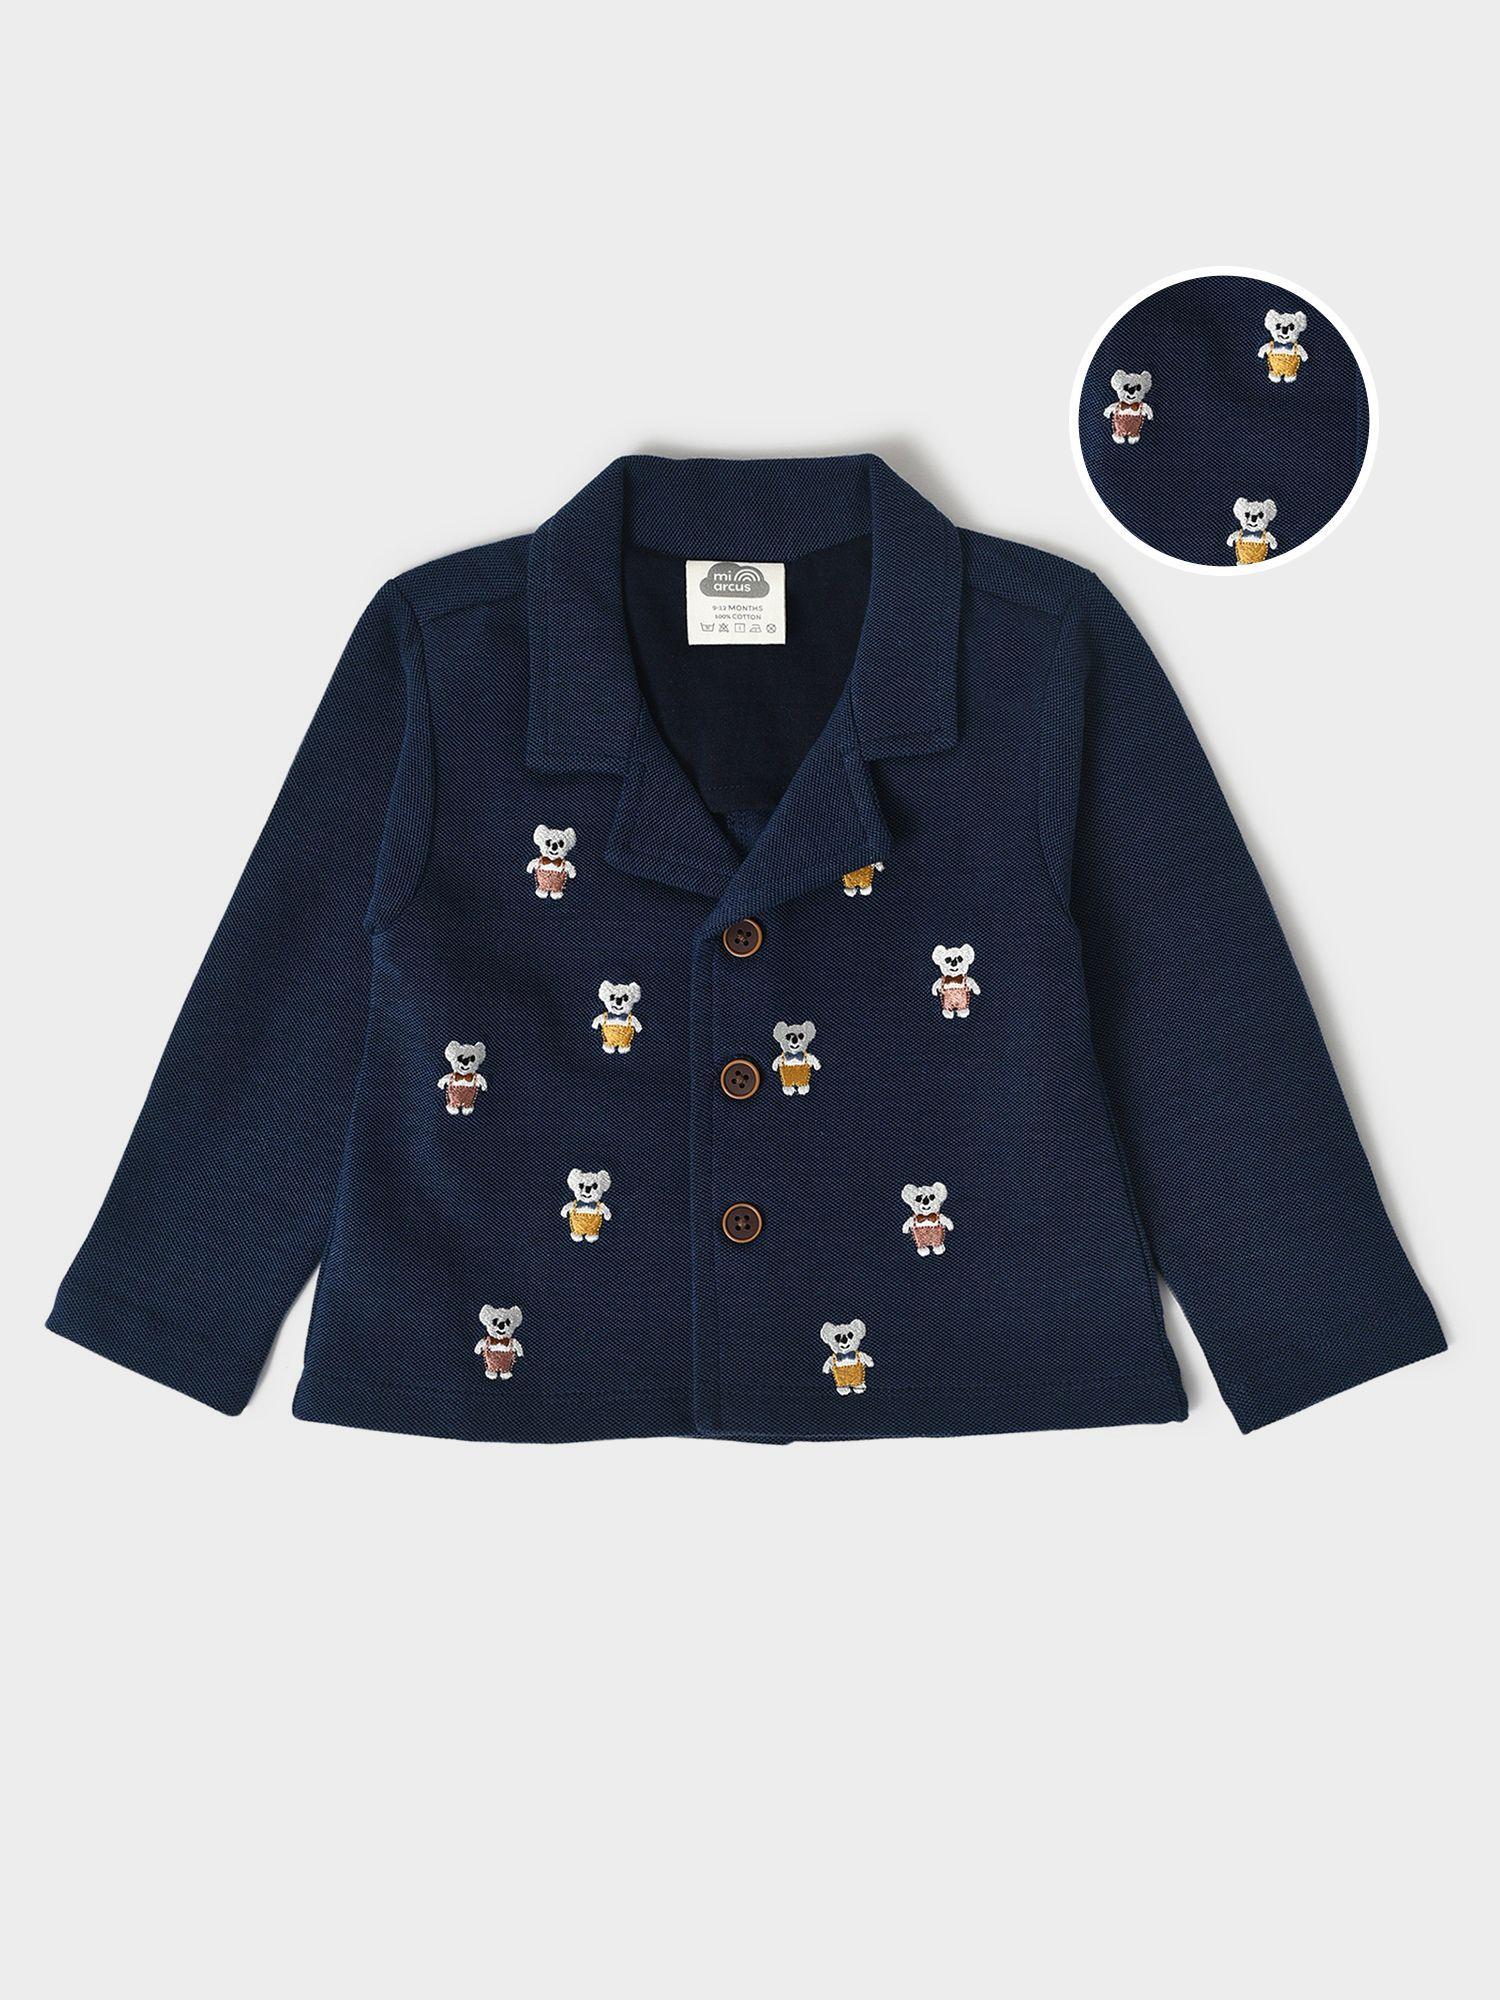 unisex kids navy blue lightweight tailored blazer